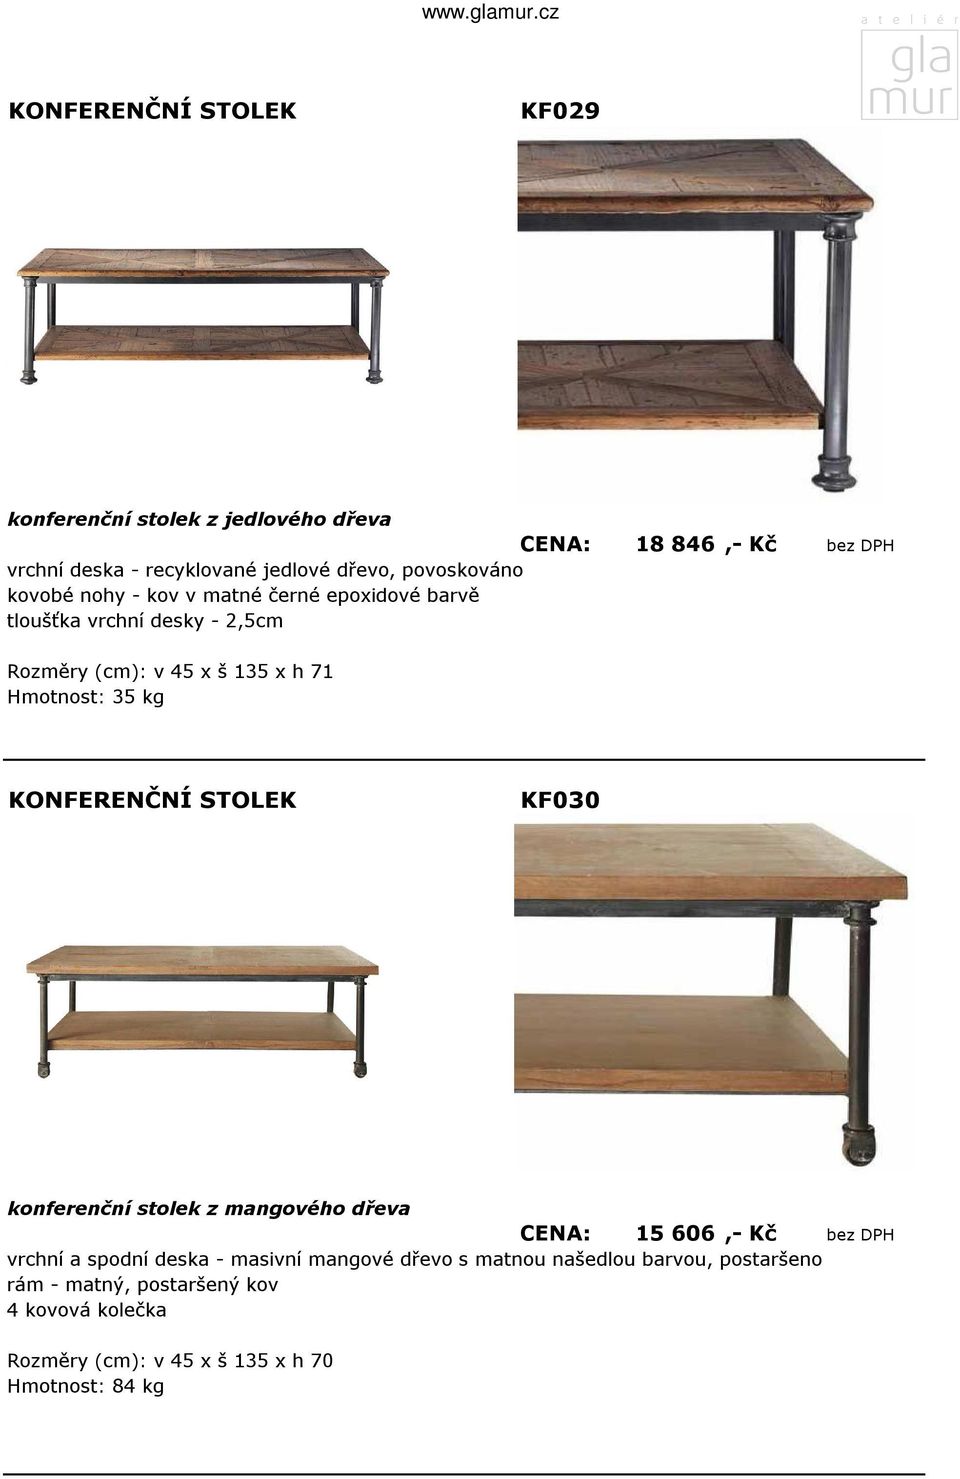 kg KF030 konferenční stolek z mangového dřeva CENA: 15 606,- Kč bez DPH vrchní a spodní deska - masivní mangové dřevo s